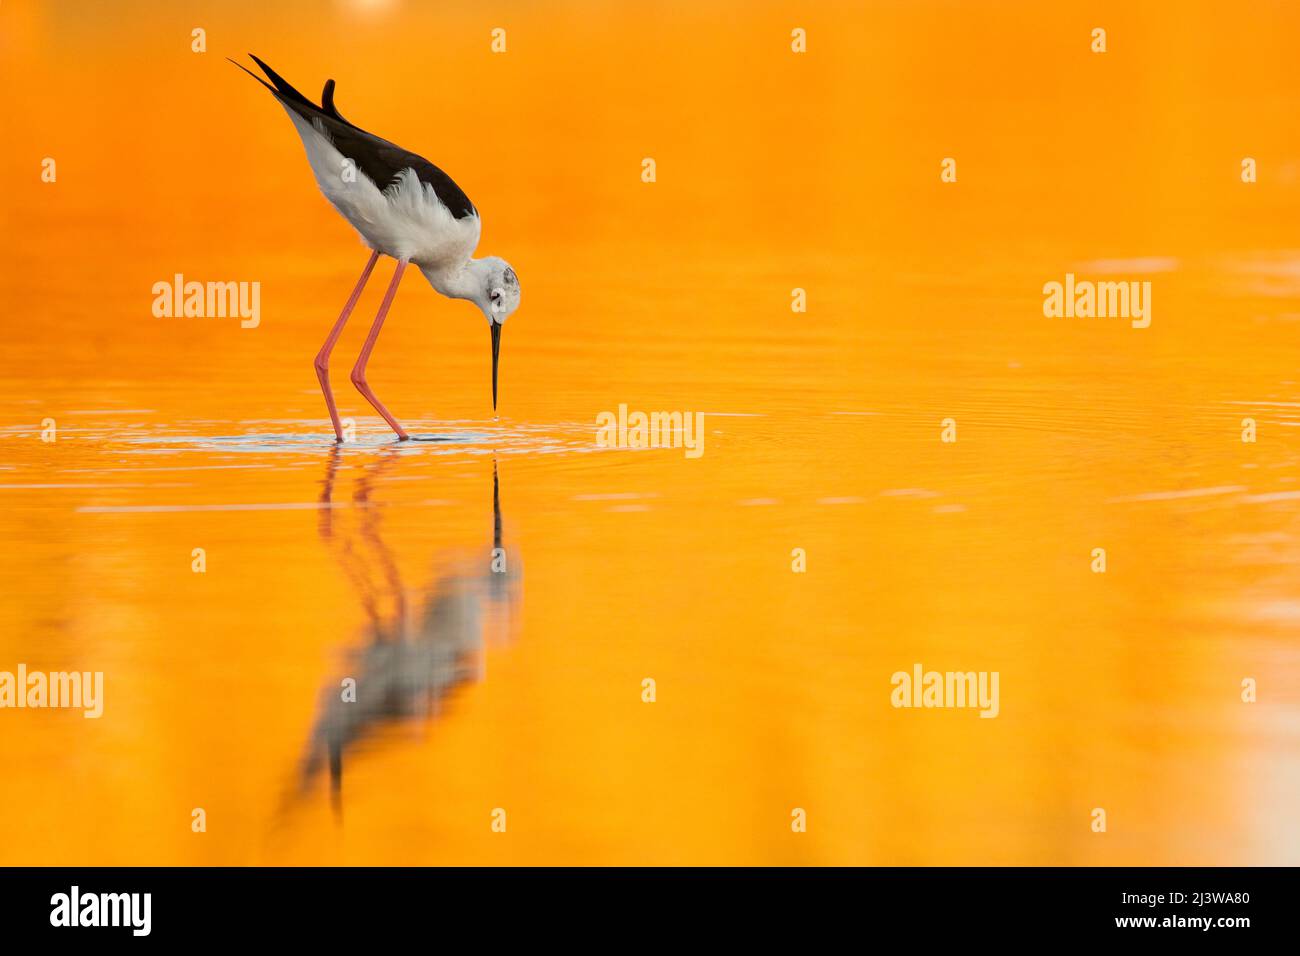 Männliche Schwarzflügelflügelige (Himantopus himantopus), die im Wasser watet ein orangefarbener Sonnenuntergang färbt das Wasser und die Spiegelung der Vögel. Fotografiert in Israel in Stockfoto